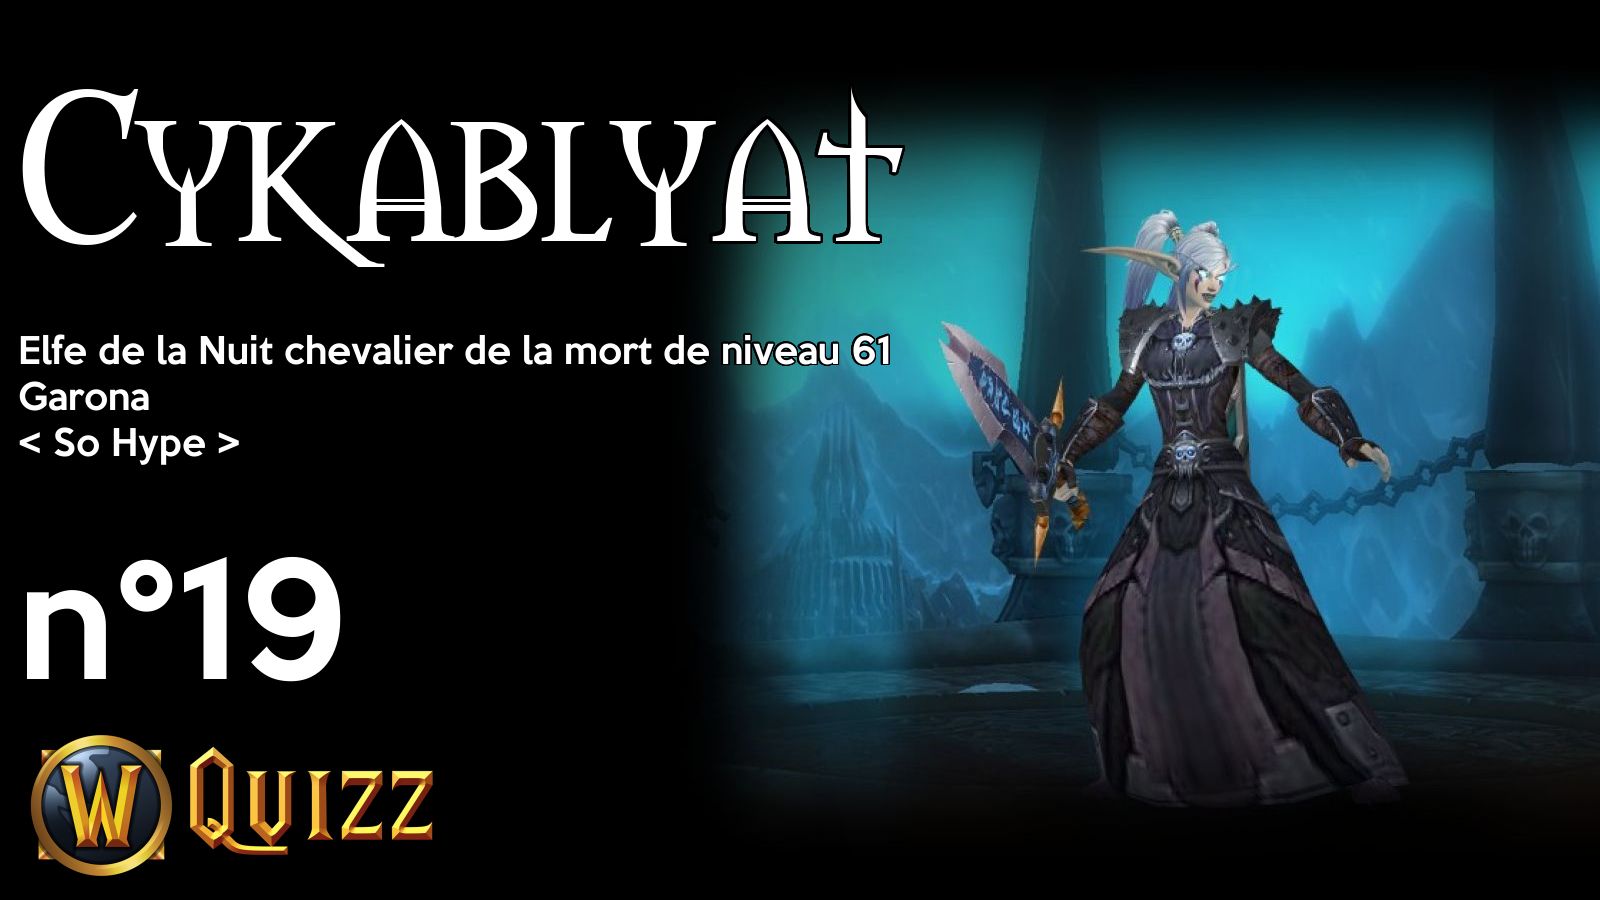 Cykablyat, Elfe de la Nuit chevalier de la mort de niveau 61, Garona